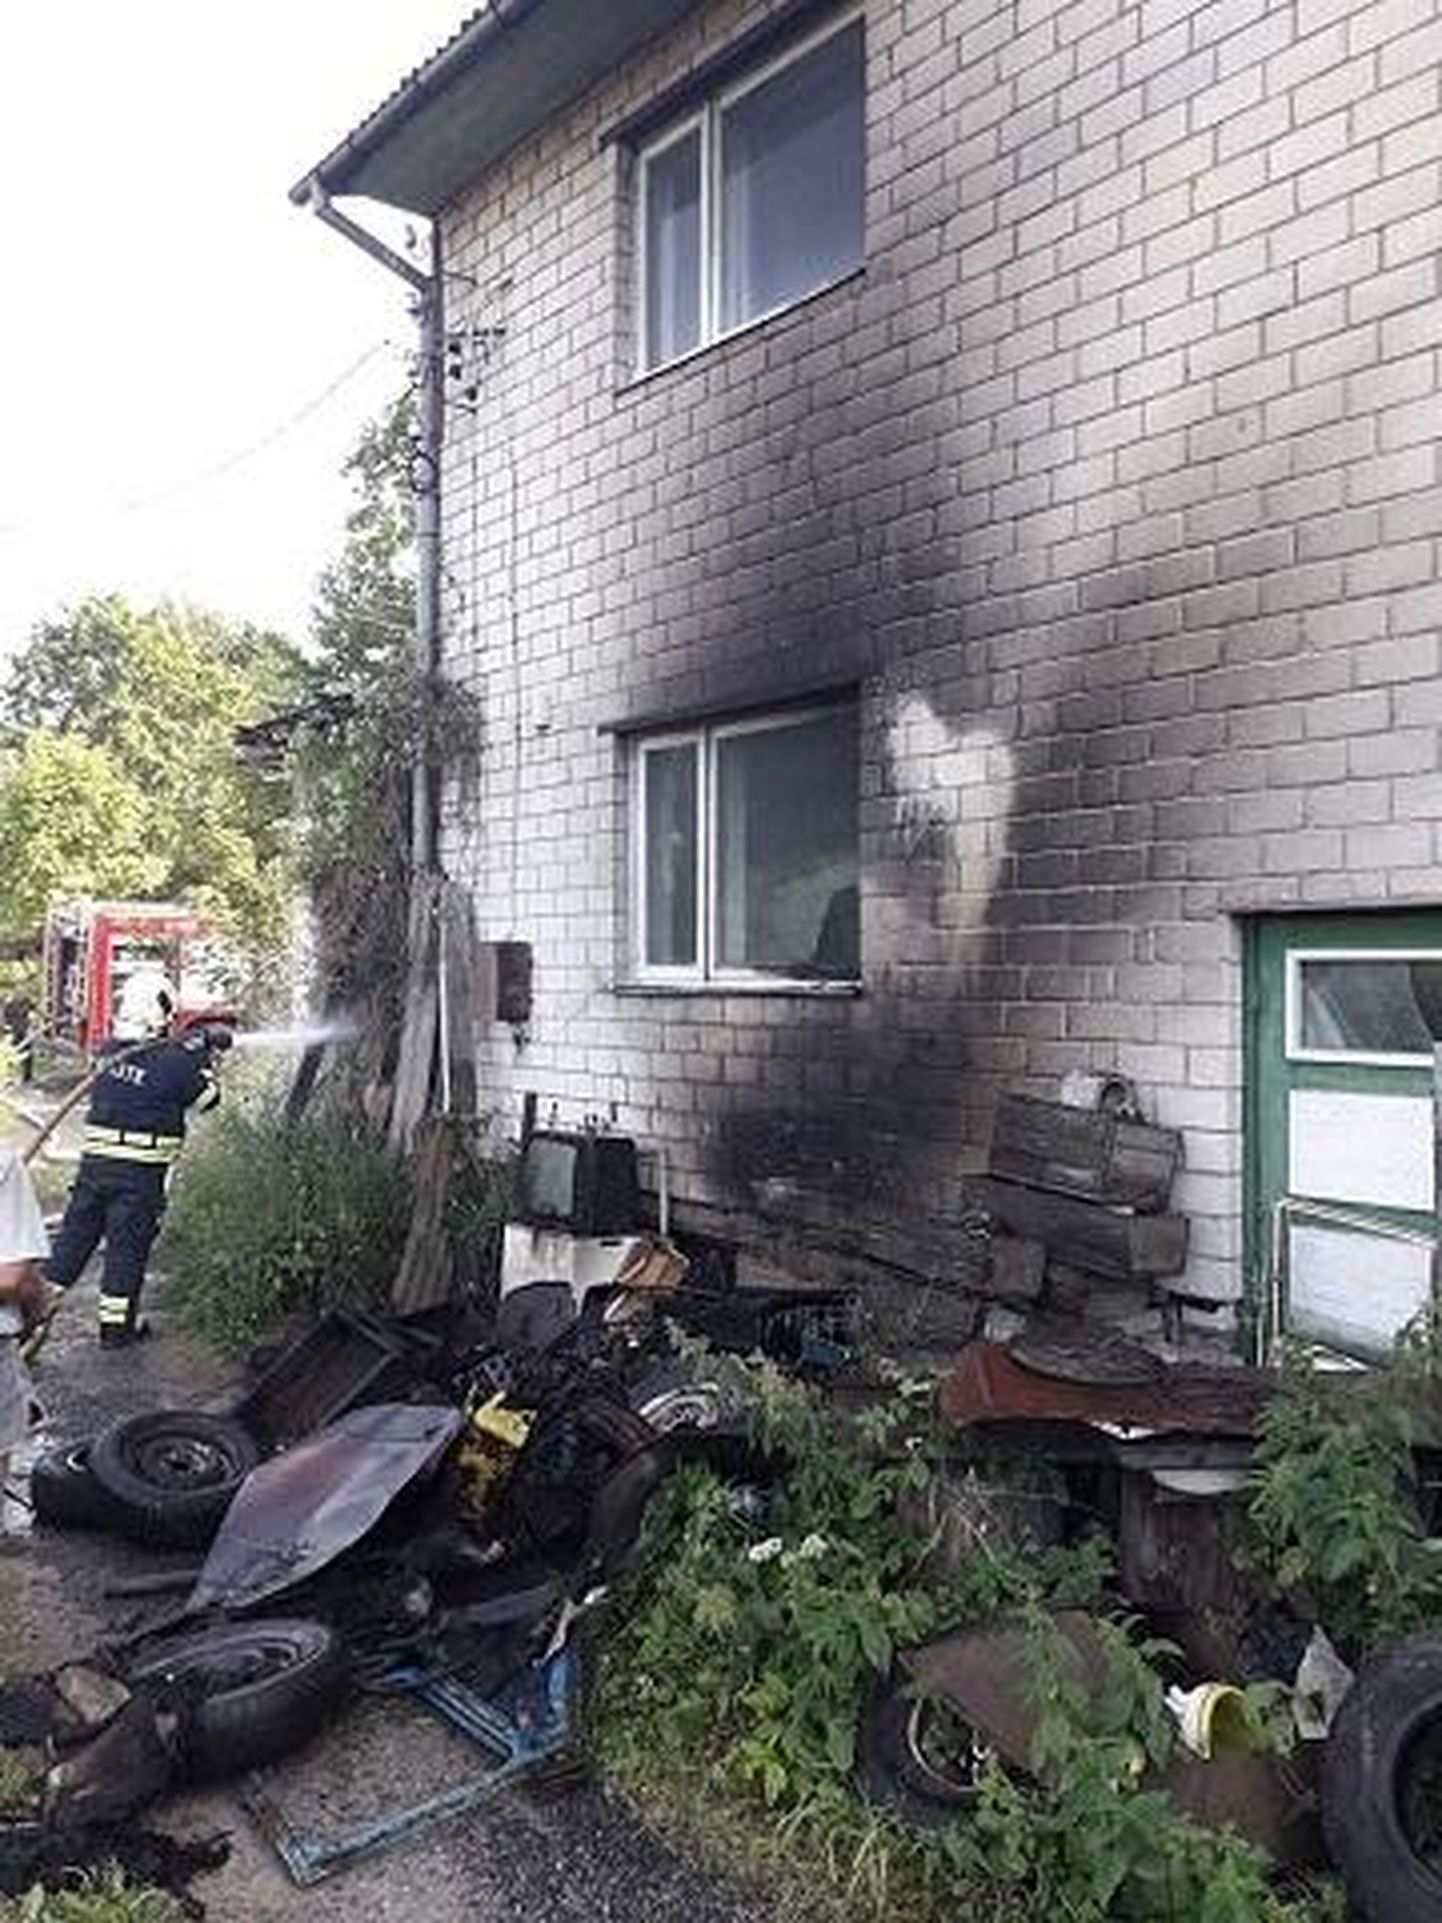 Mustlas Kuressaare tänaval süttis maja kõrval elektrijuhtmestik. Päästjad kustutasid suuremad leegid viie minutiga ning kontrollisid ohutuse tagamiseks olukorda.